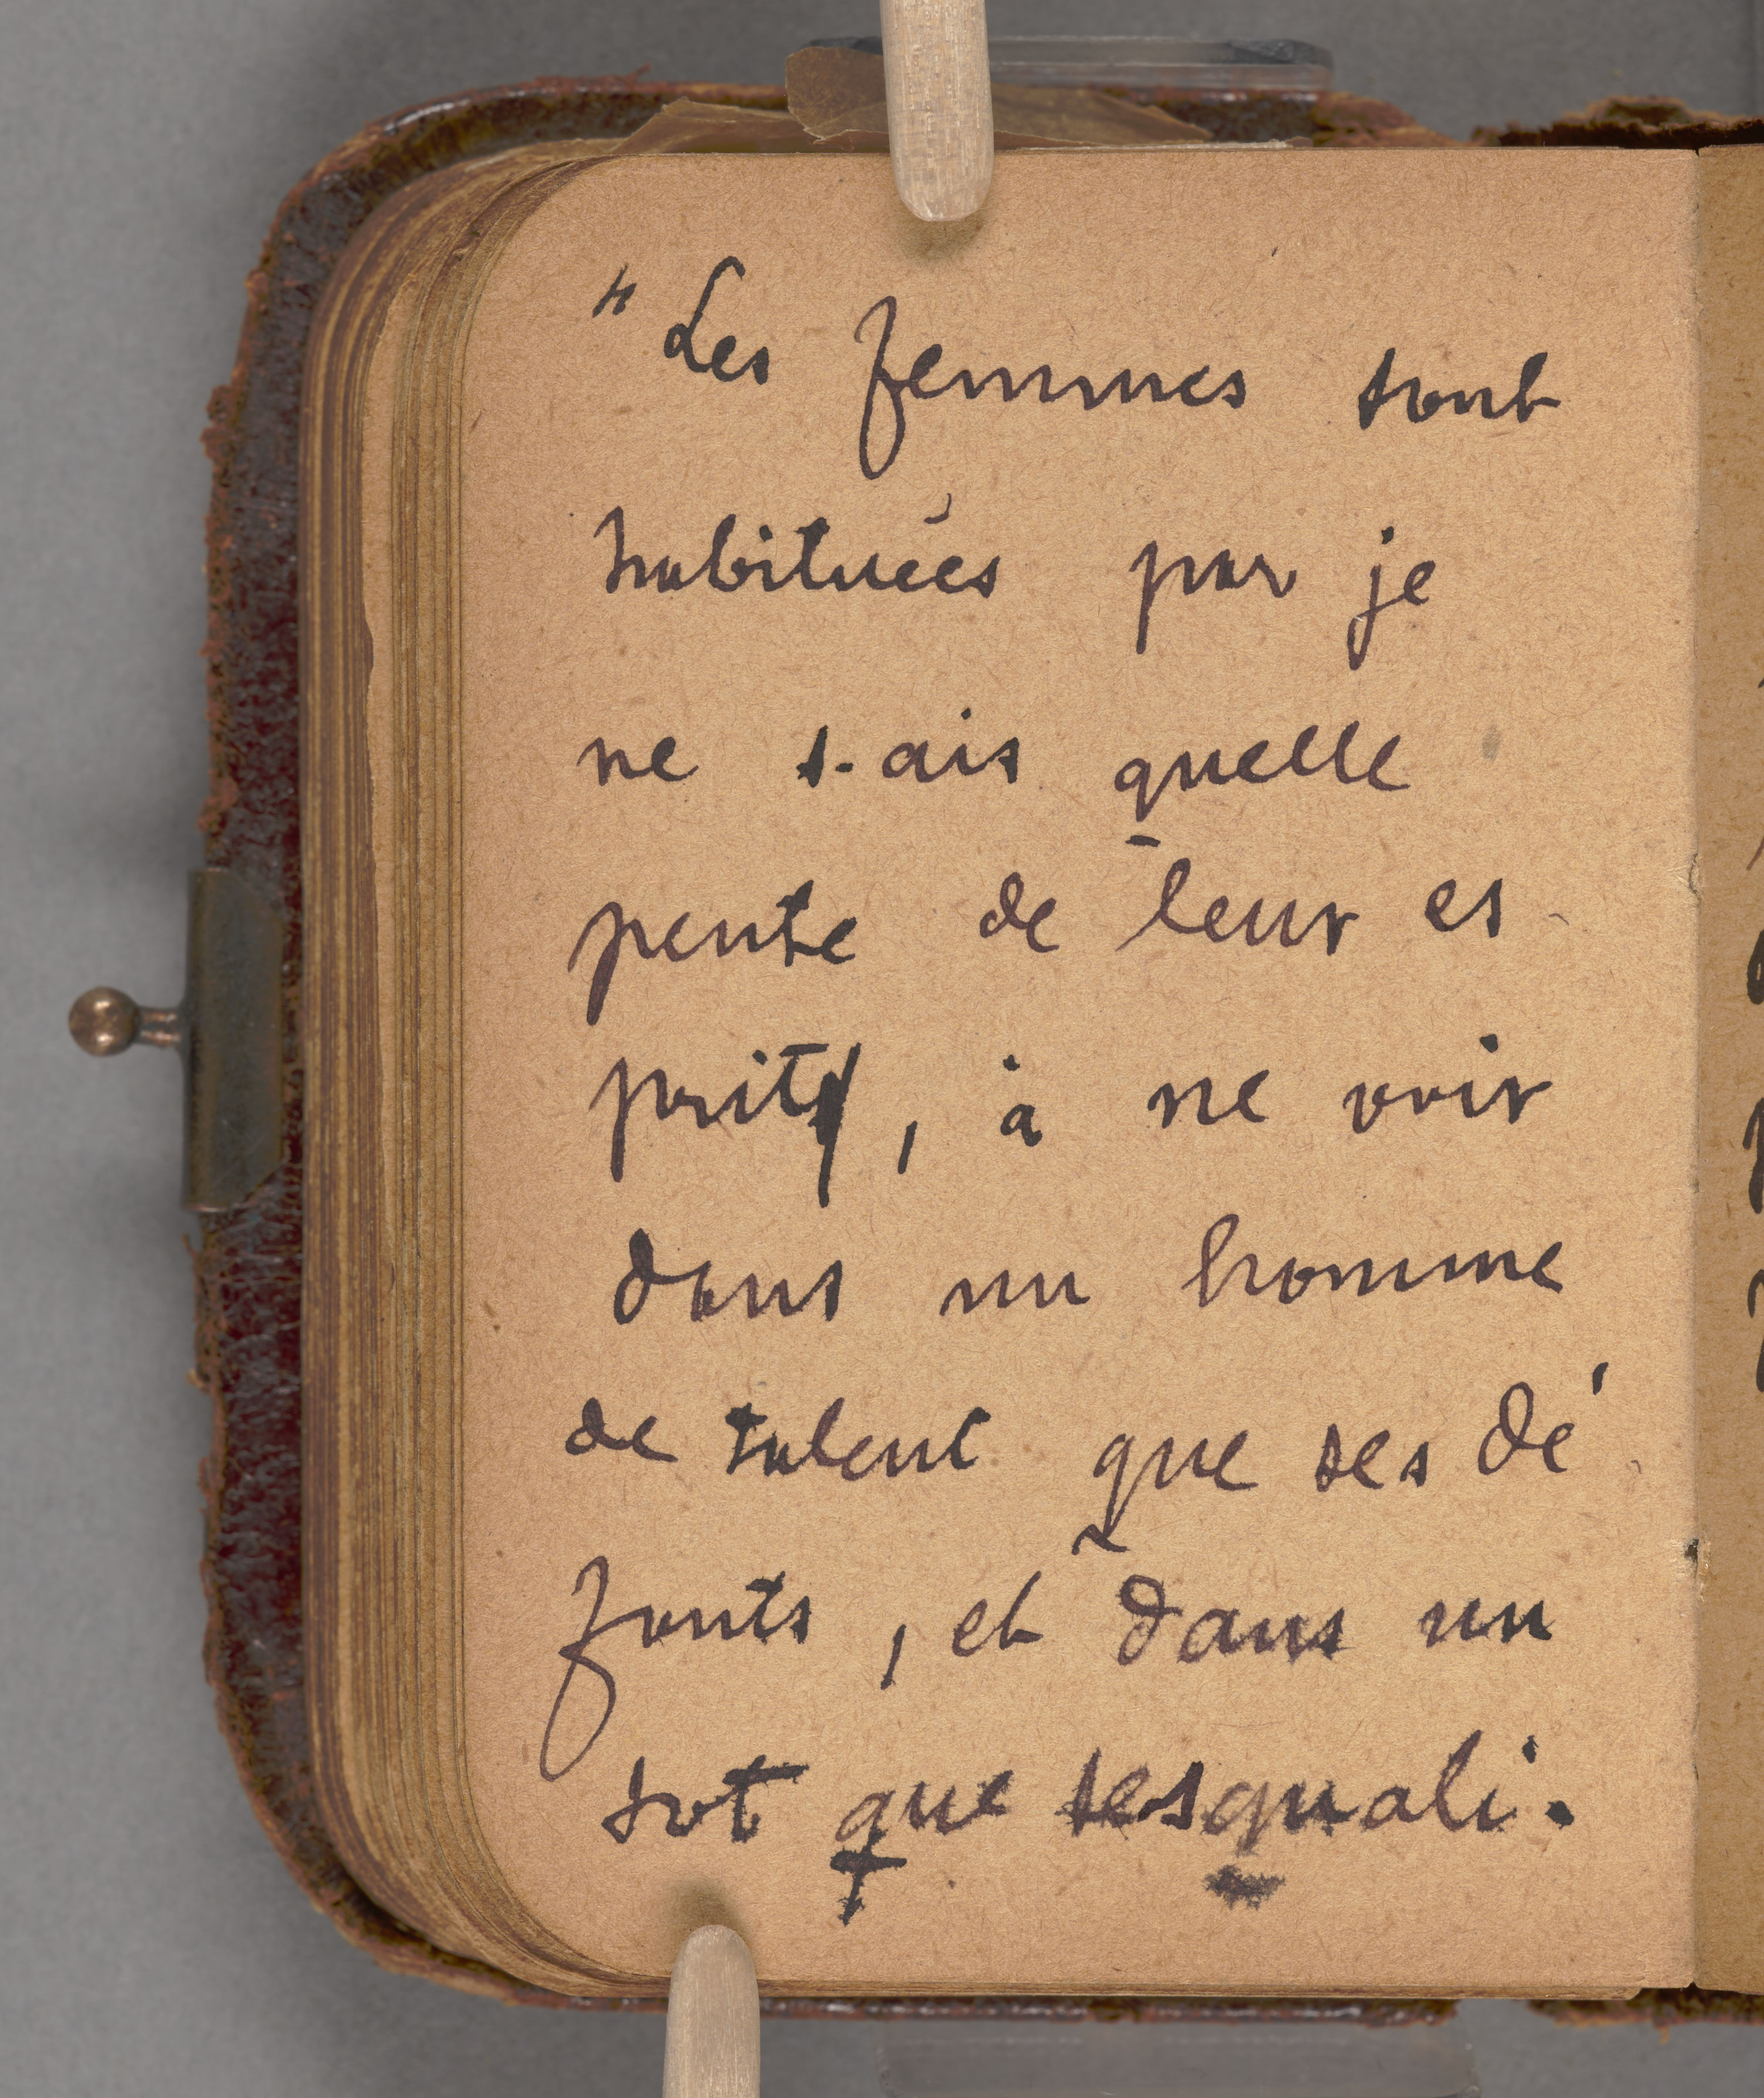 Handskriven text i svart bläck på gulnat papper i liten anteckningsbok.